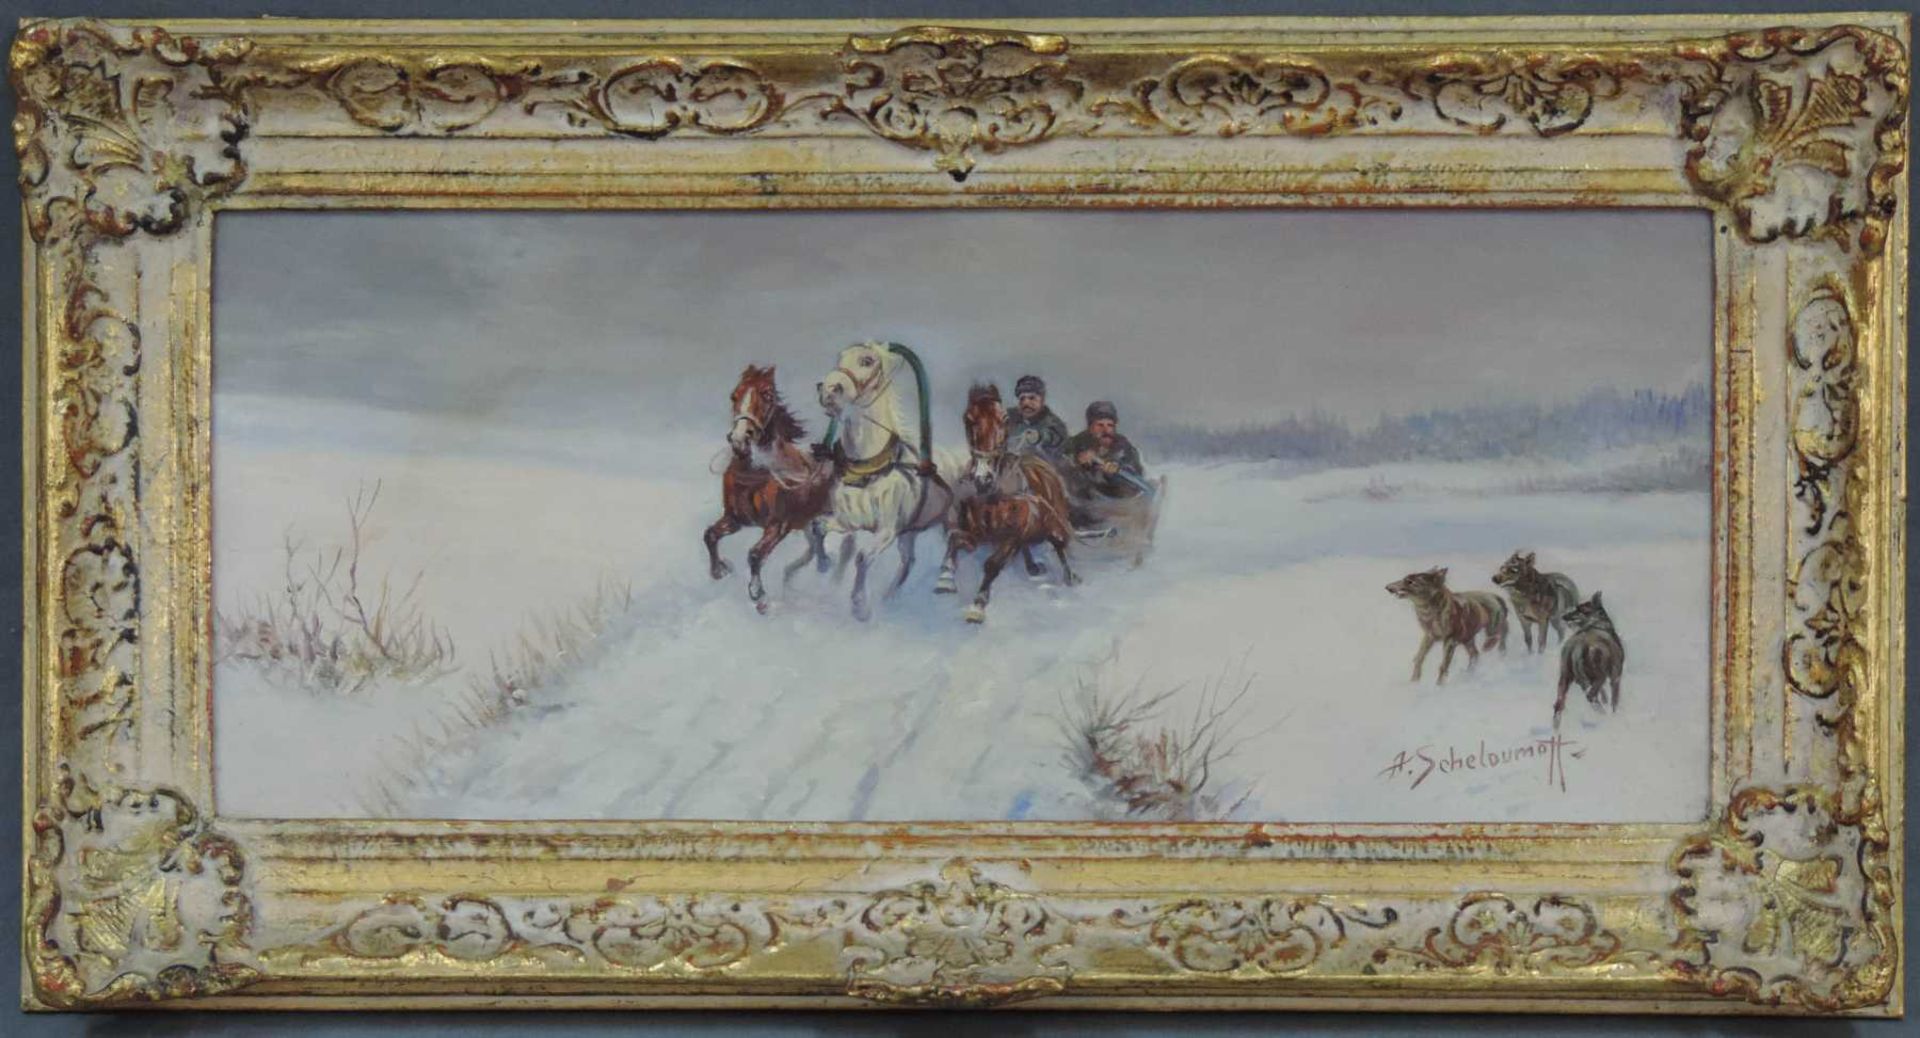 Alexander Scheloumoff (1892 - 1983). Pferdeschlitten in verschneiter Landschaft. 25,5 cm x 60,5